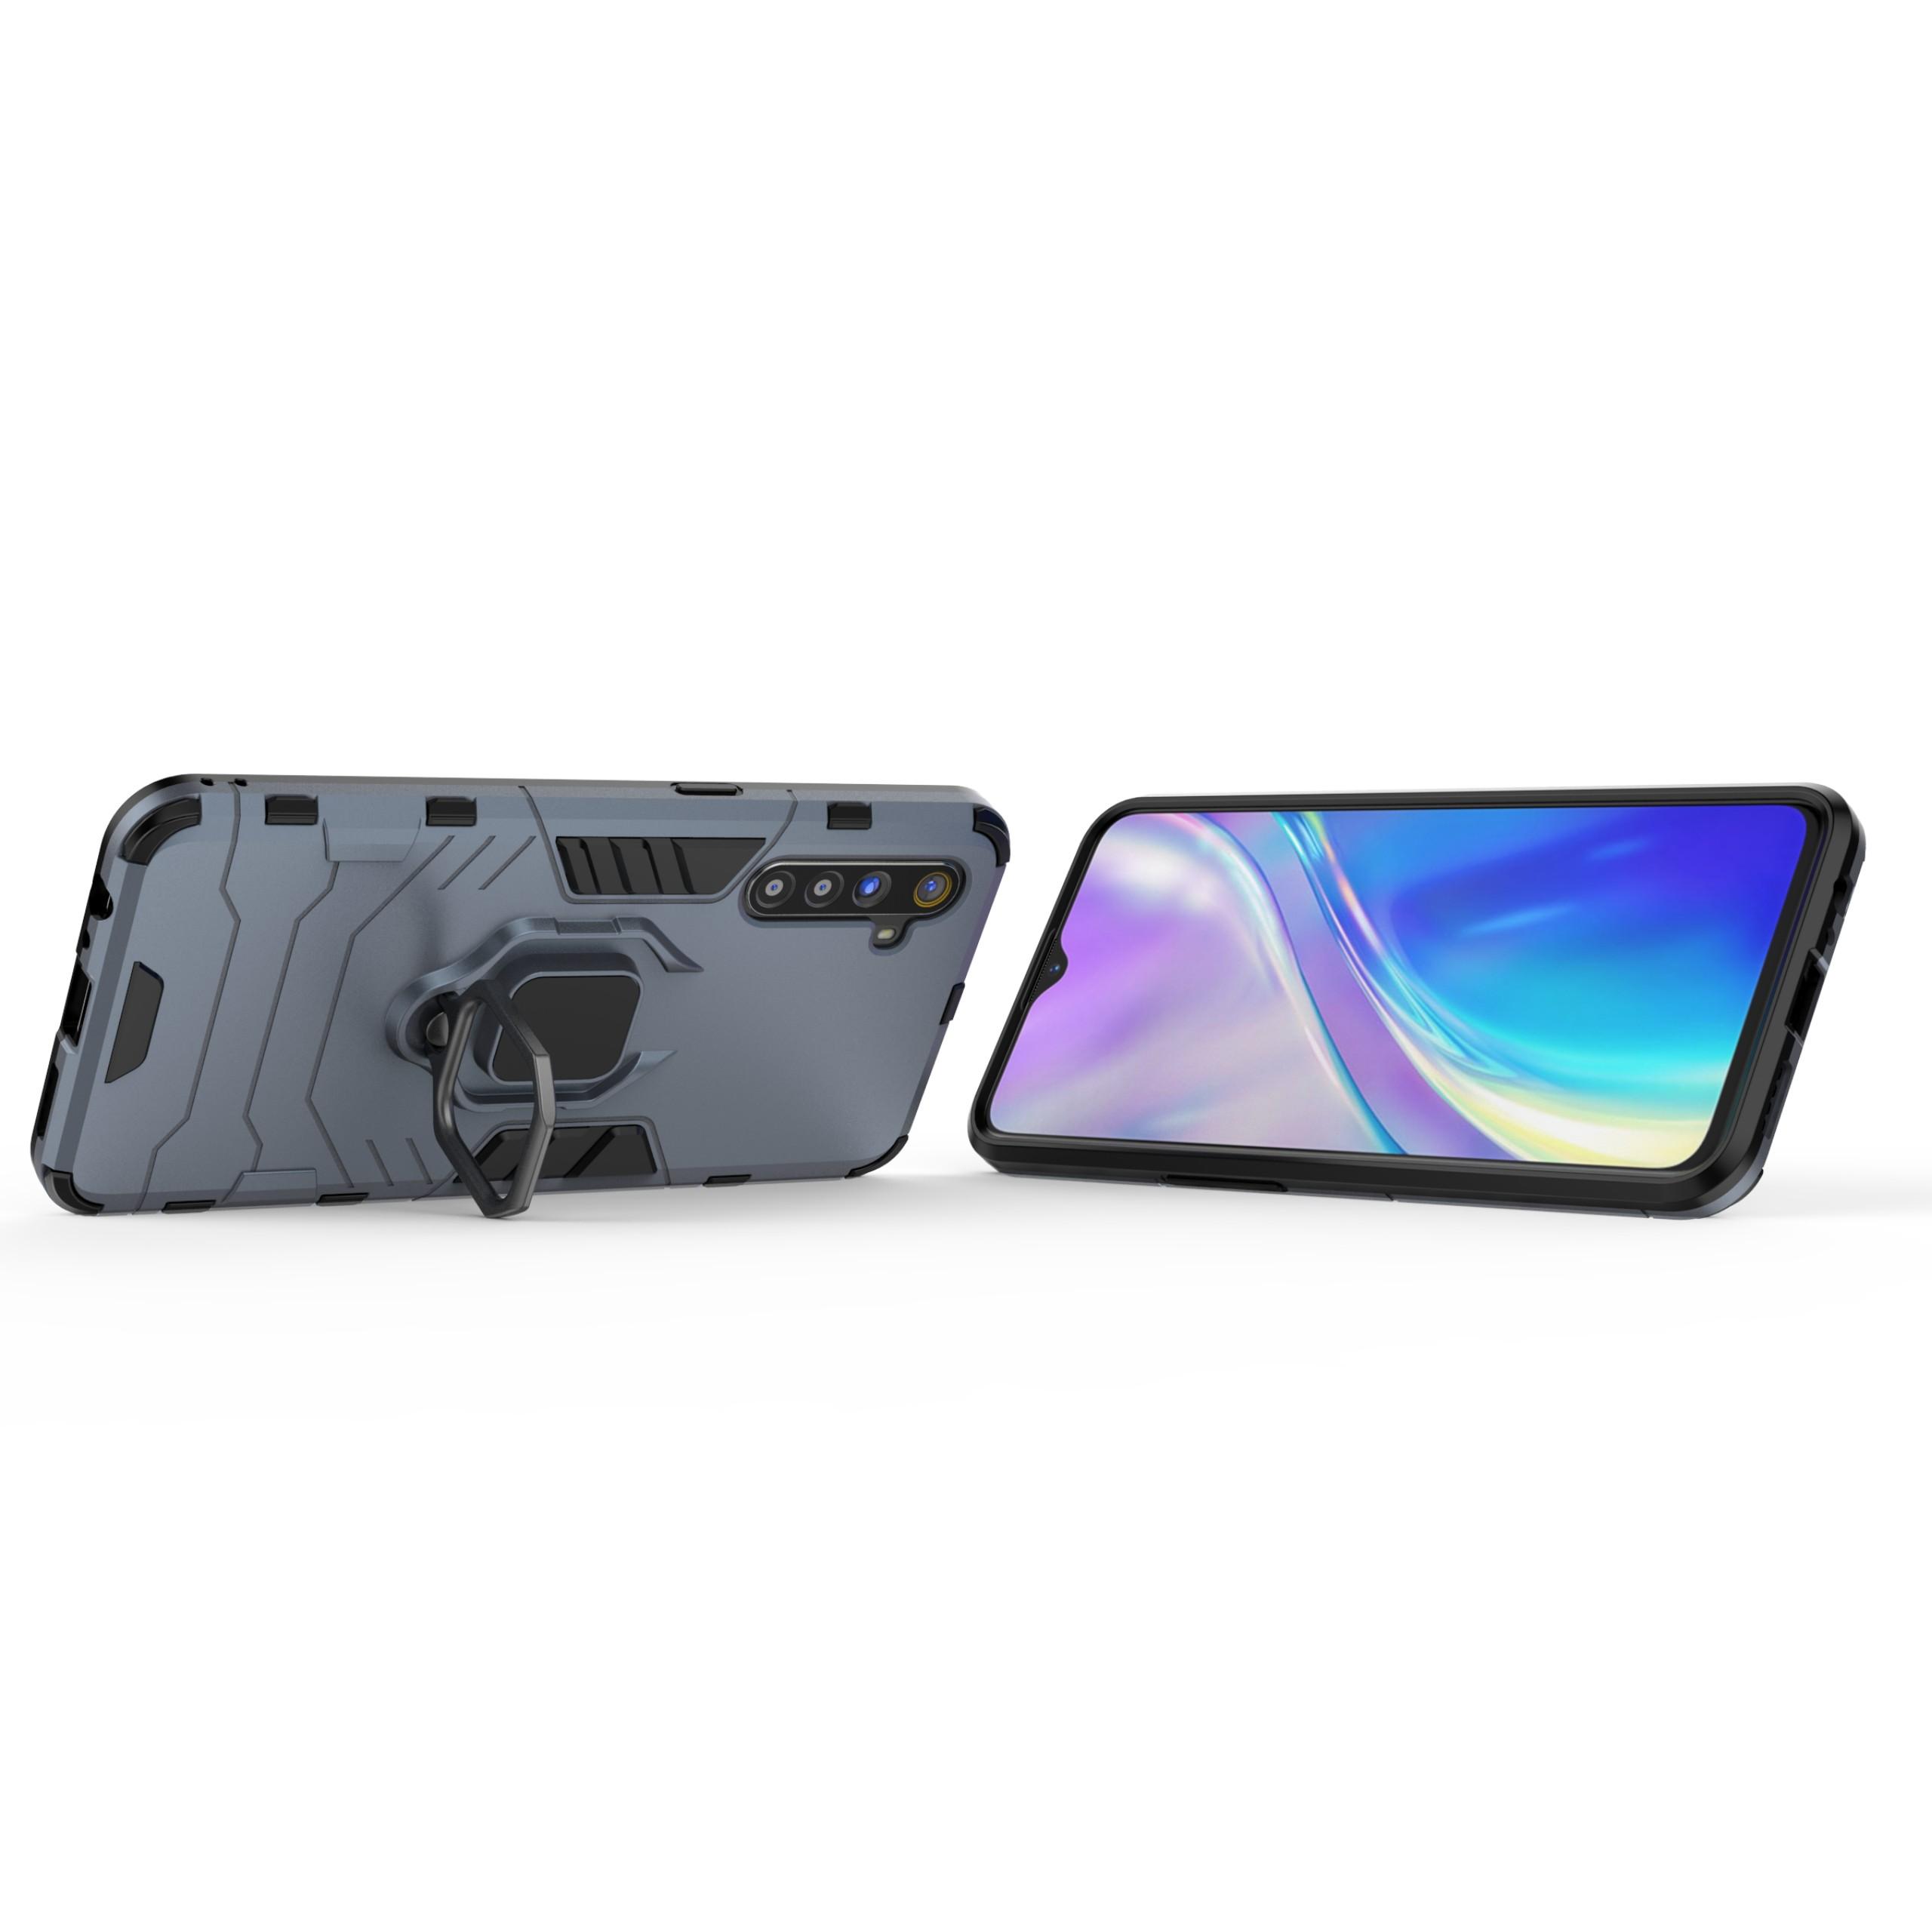 Ốp lưng Oppo Realme XT / Oppo K5 / Realme X2 chống sốc Iron Man Iring chống sốc giá đỡ xem phim cao cấp siêu bền